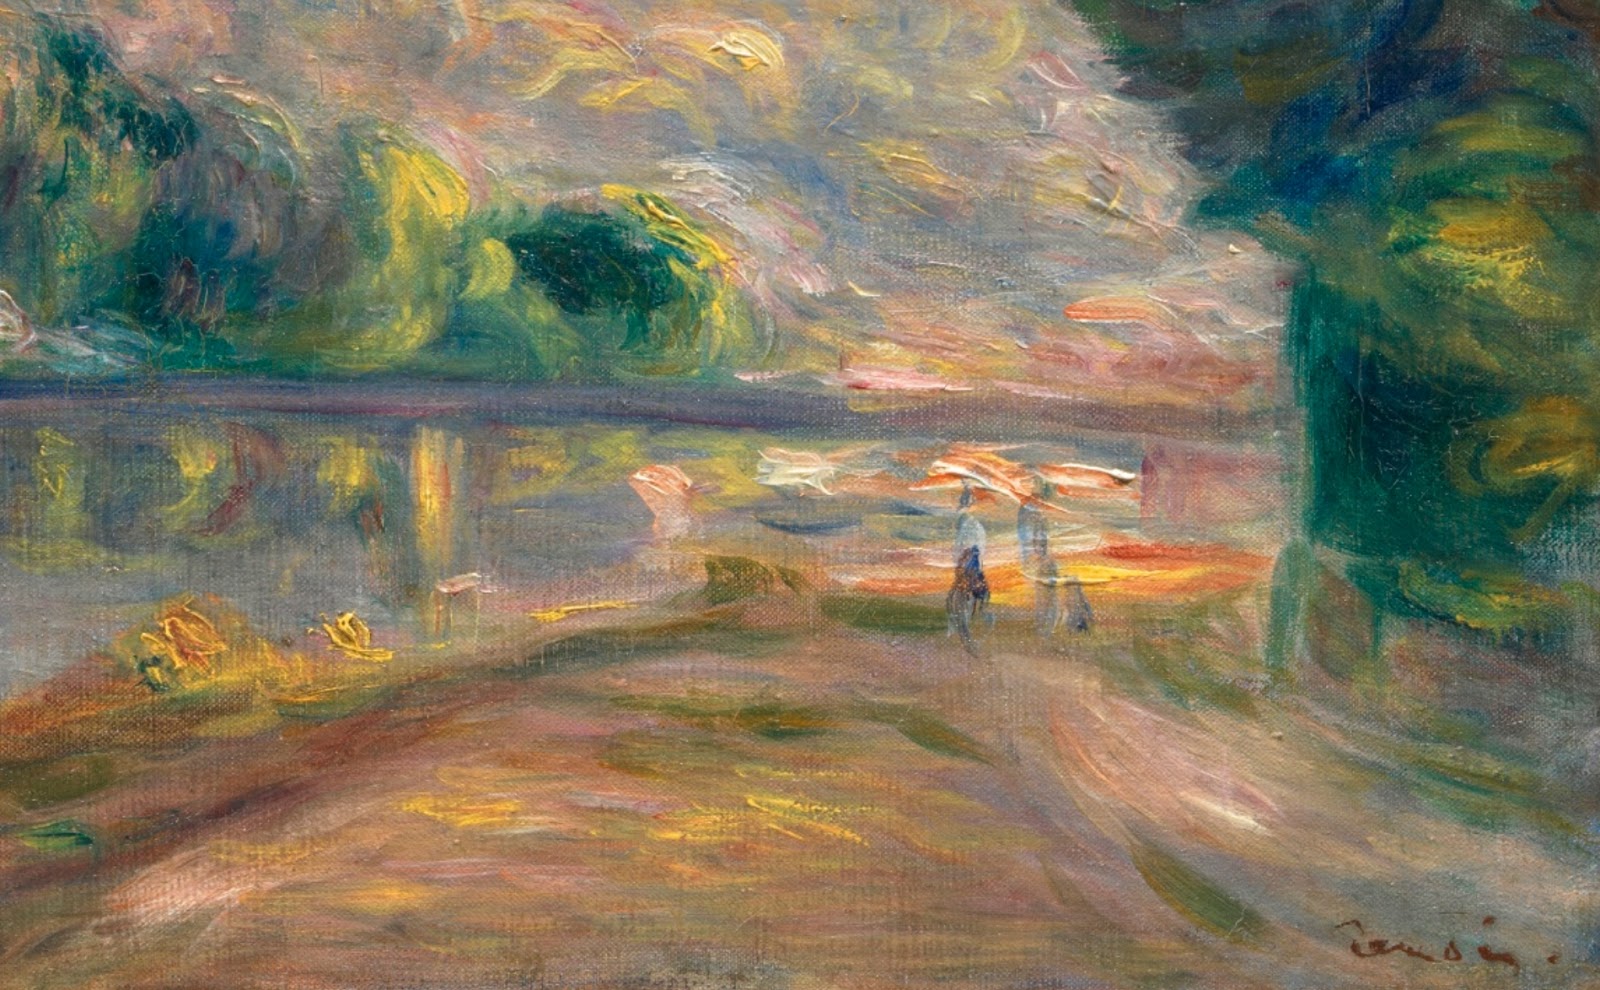 Pierre+Auguste+Renoir-1841-1-19 (828).jpg